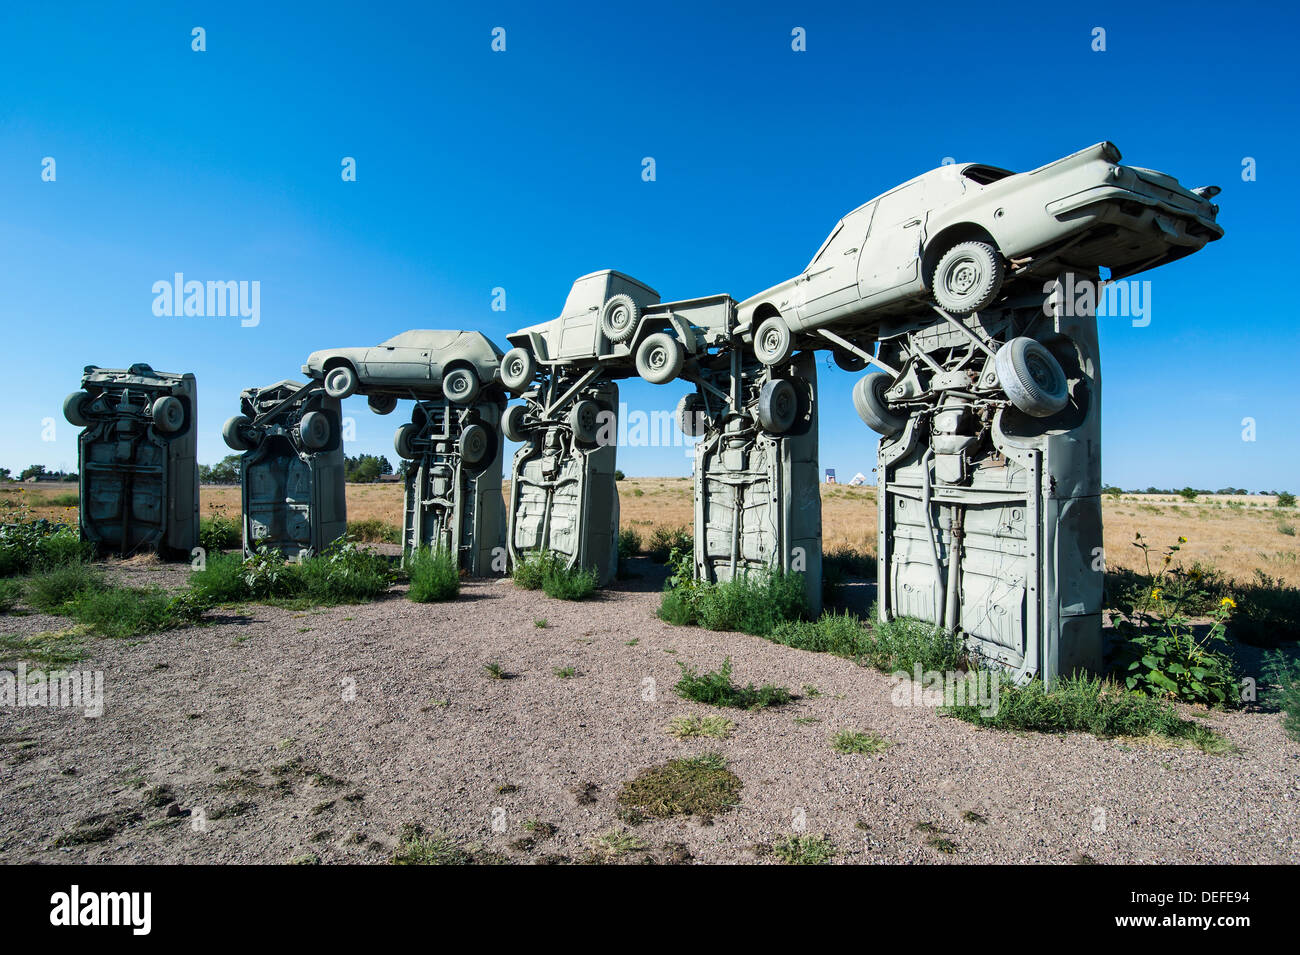 Carhenge, ein Nachbau der englischen Stonehenge, ausgefertigt von Autos in der Nähe von Allianz, Nebraska, Vereinigte Staaten von Amerika, Nordamerika Stockfoto